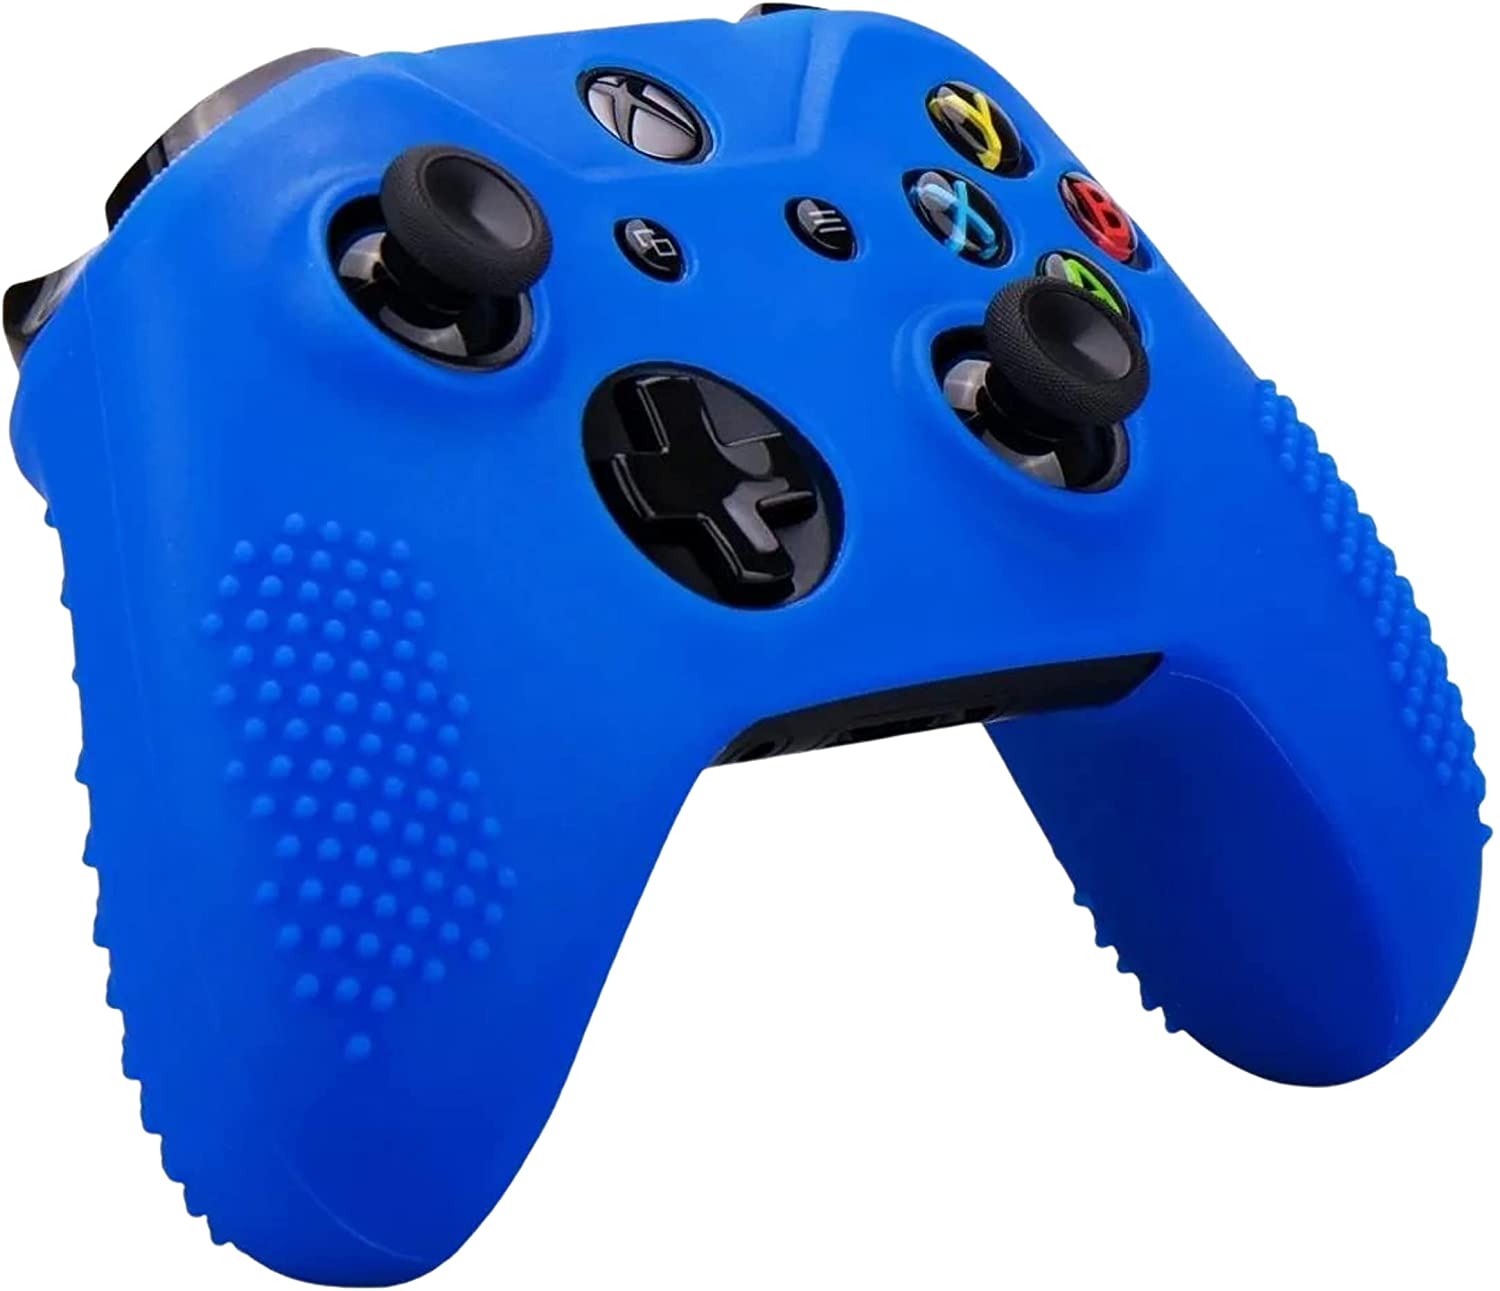 Funda Silicón Control Compatible con Xbox One S X (Rojo/ Azul) - TiendaGeek.com